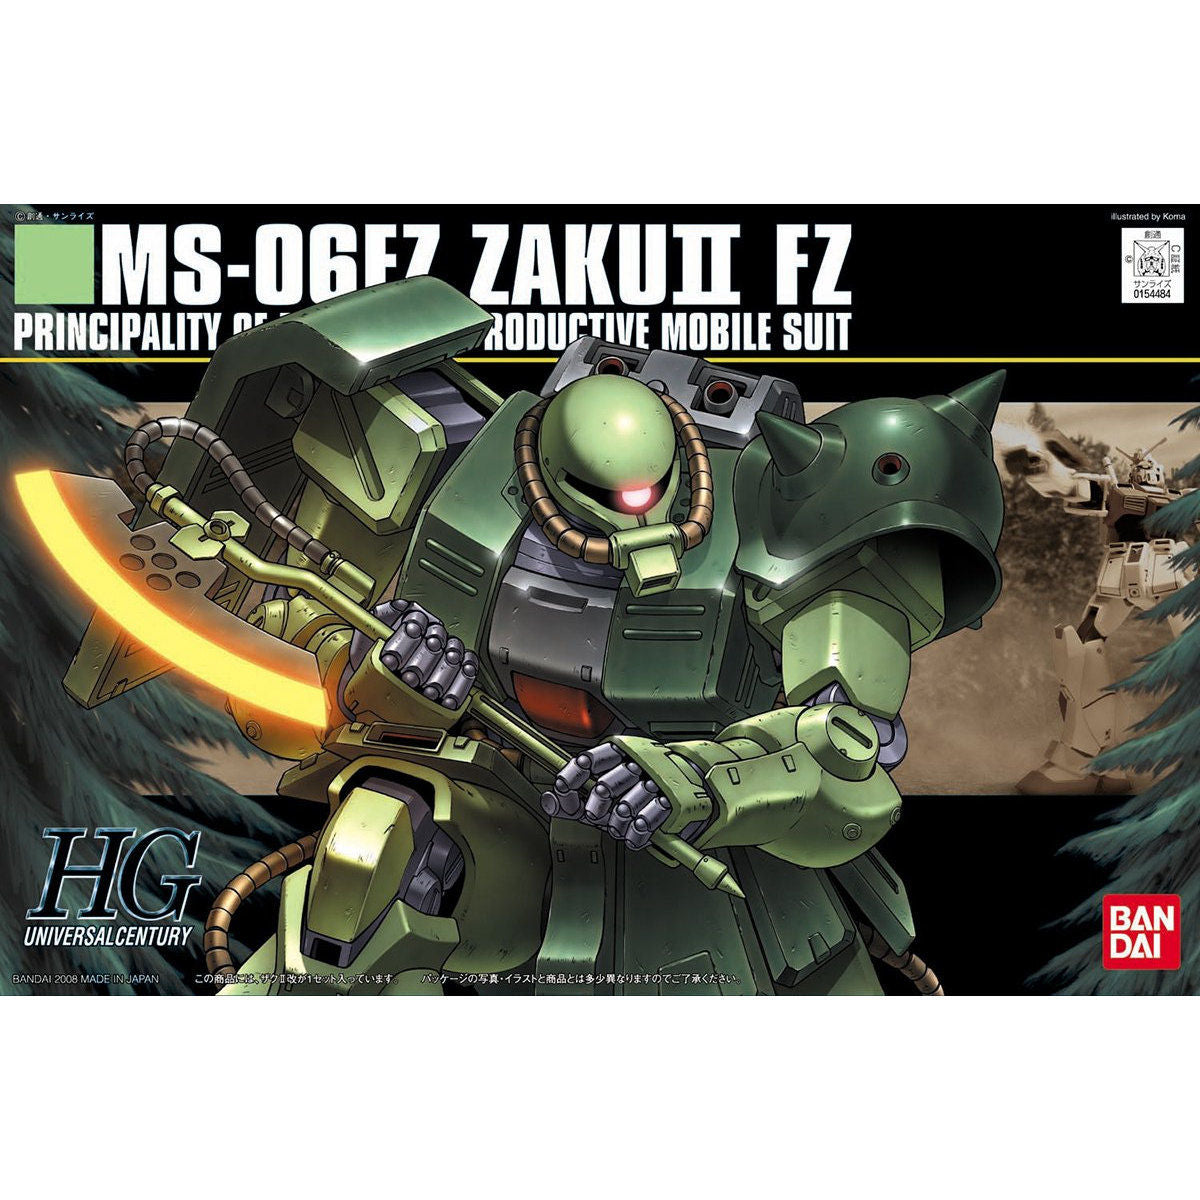 HG MS-06FZ ZAKU II FZ 1/144